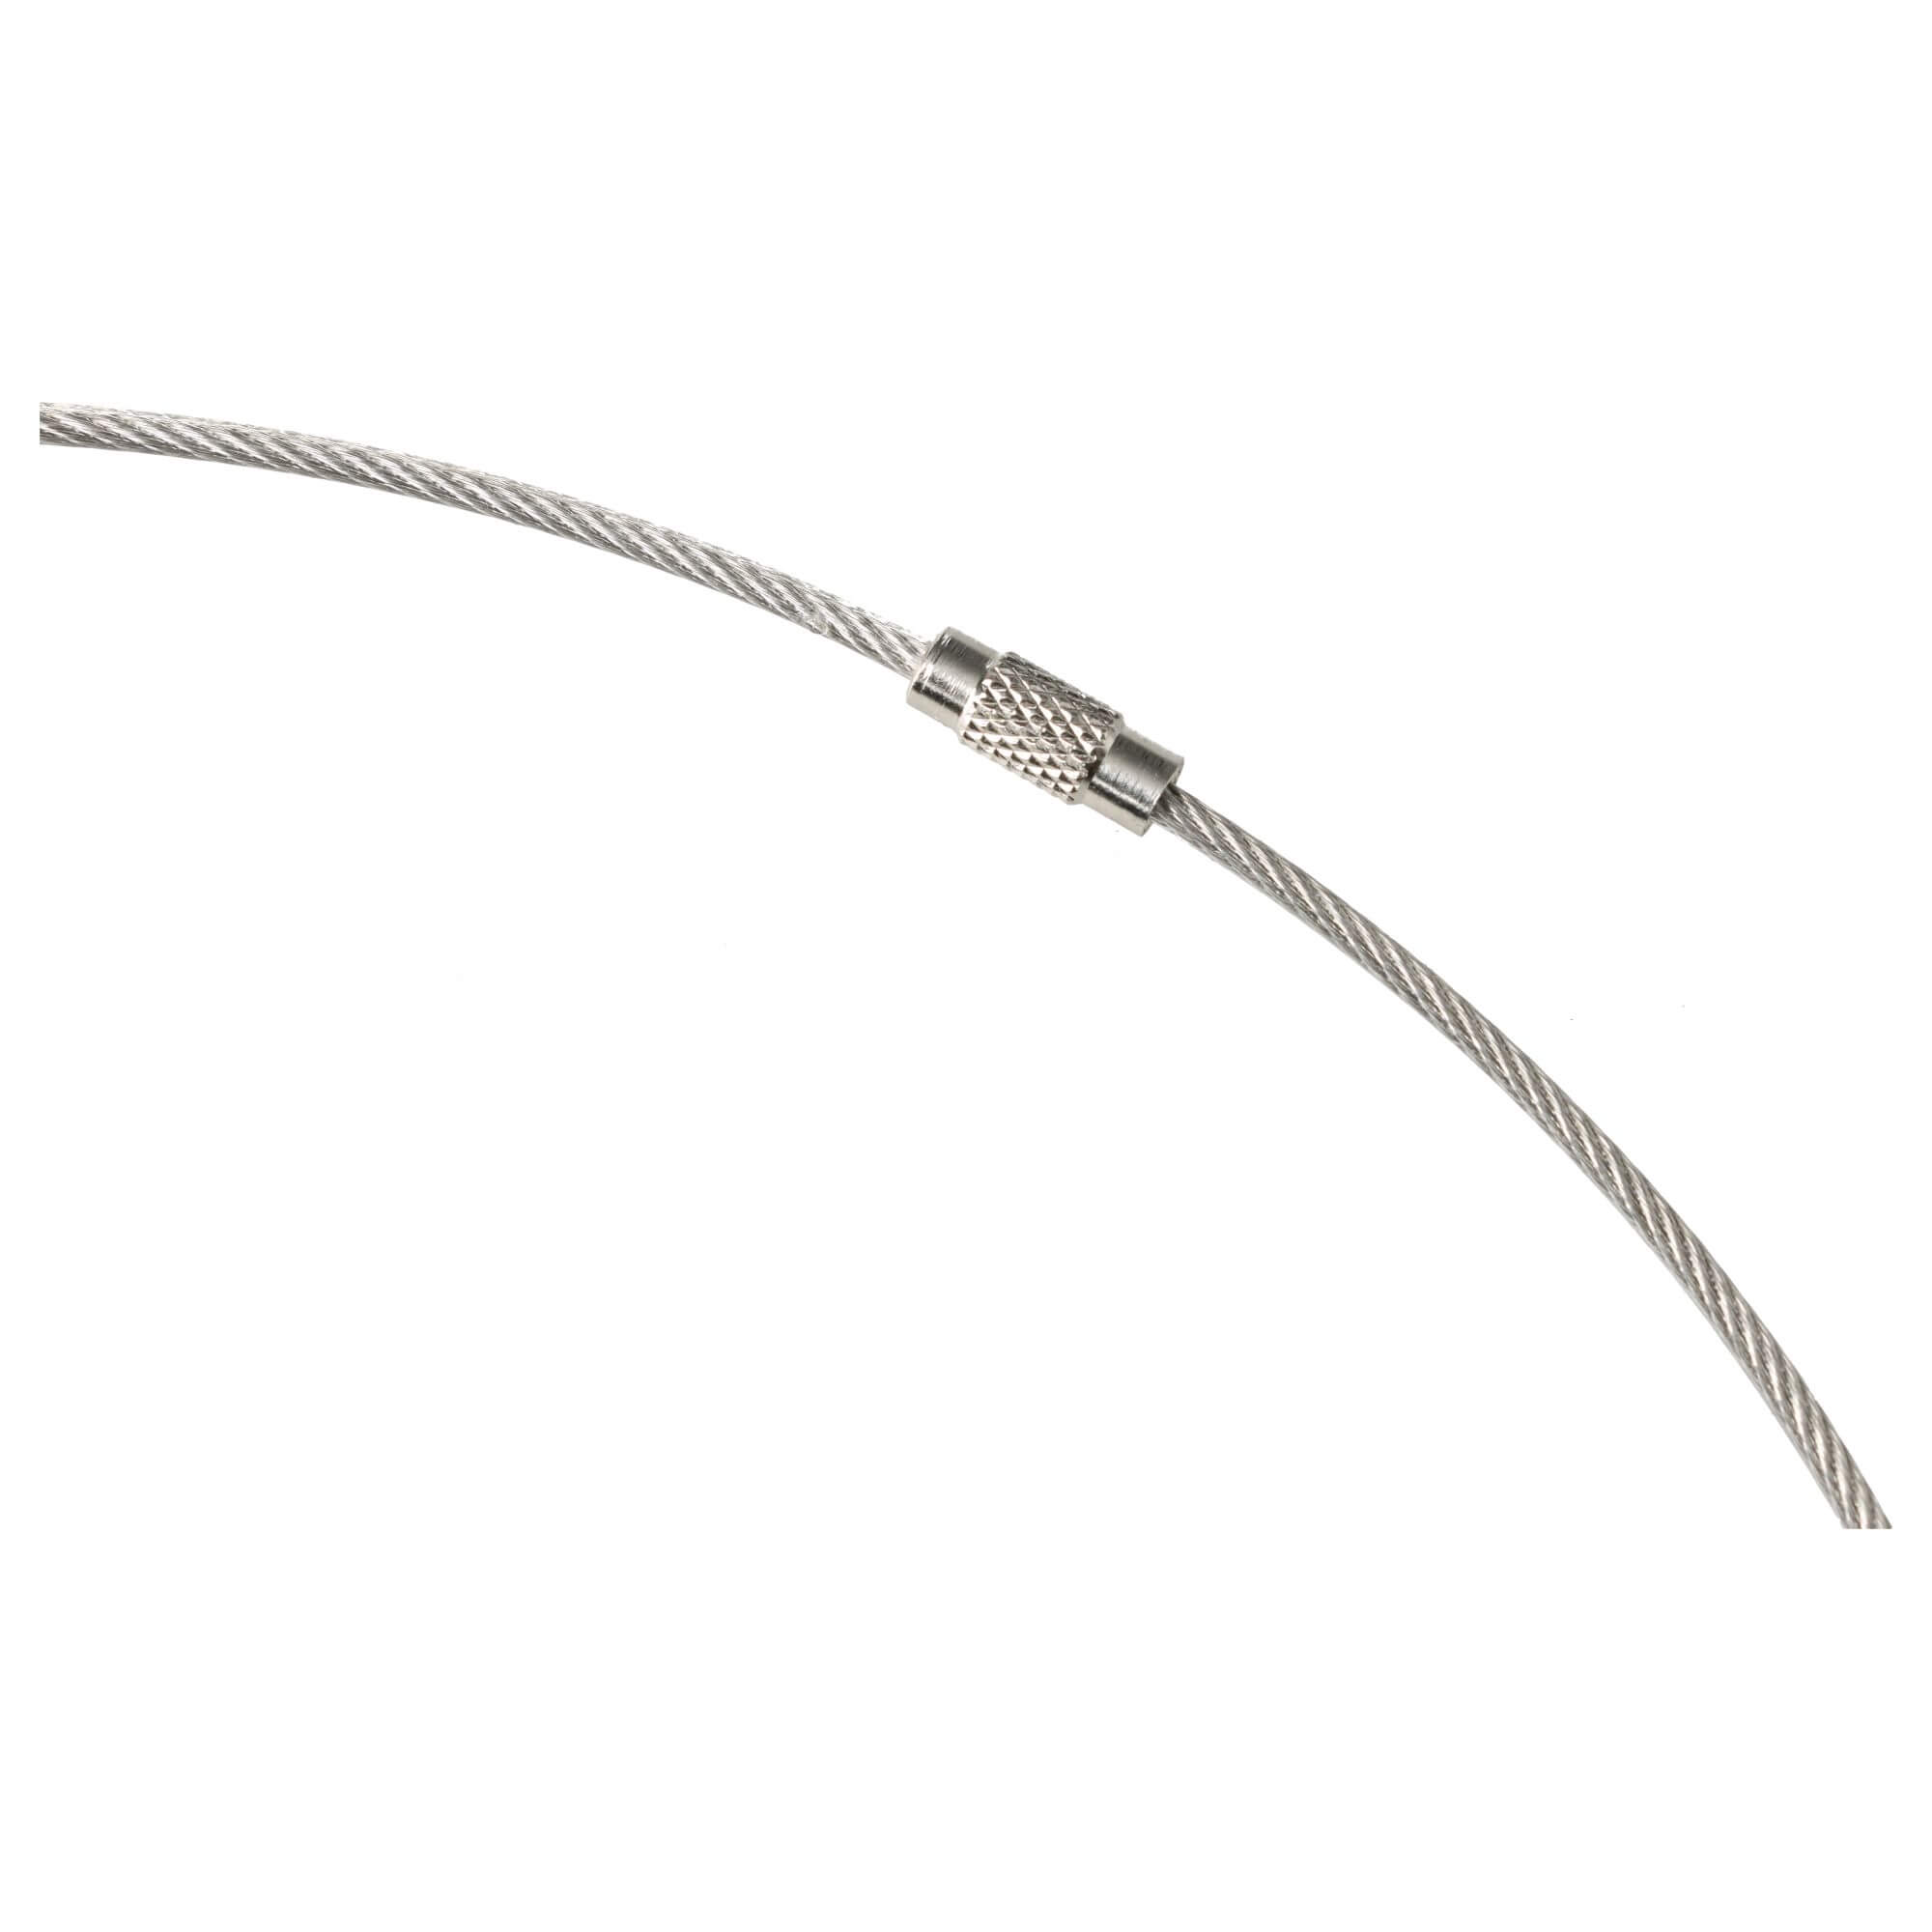 Câble métallique pour reliure de livre d'échantillons Ø200mm 1mm/2mm x 630mm inox transparent gaine PVC